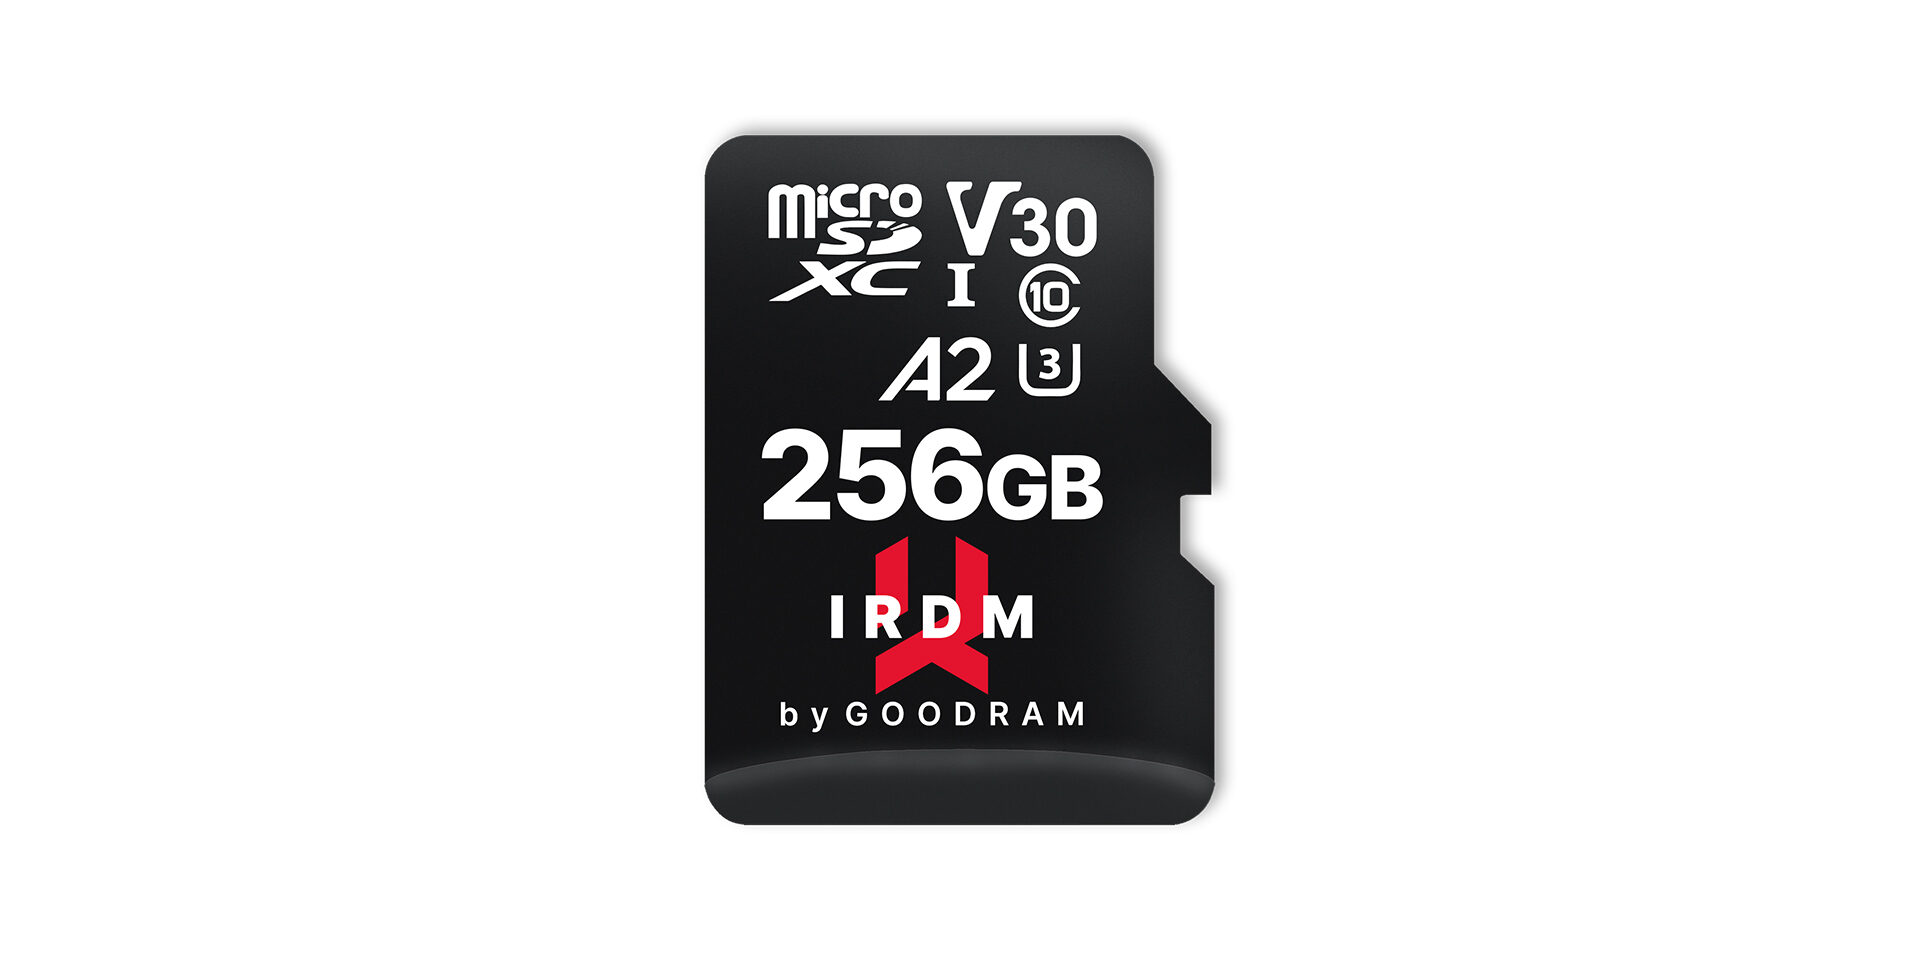 karta pamięci M2AA marki IRDM